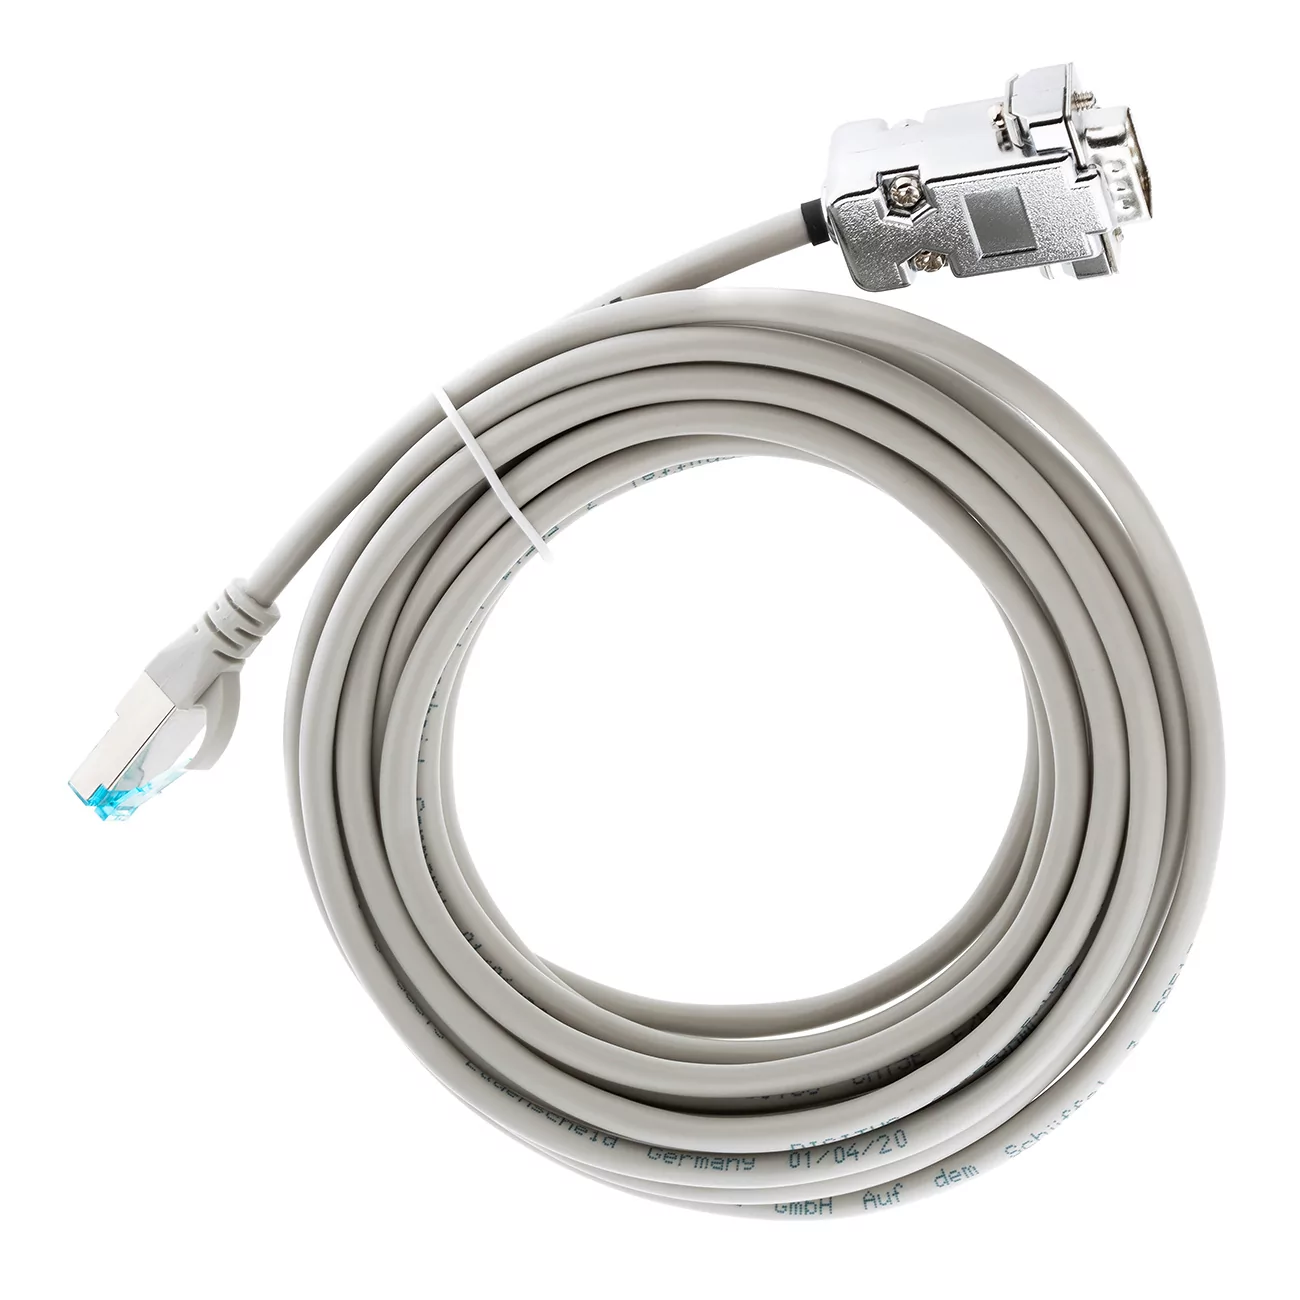 Интерфейсный кабель для устройства  отсоса пескоструйного аппарата Basic, 5 м, 2934-0008